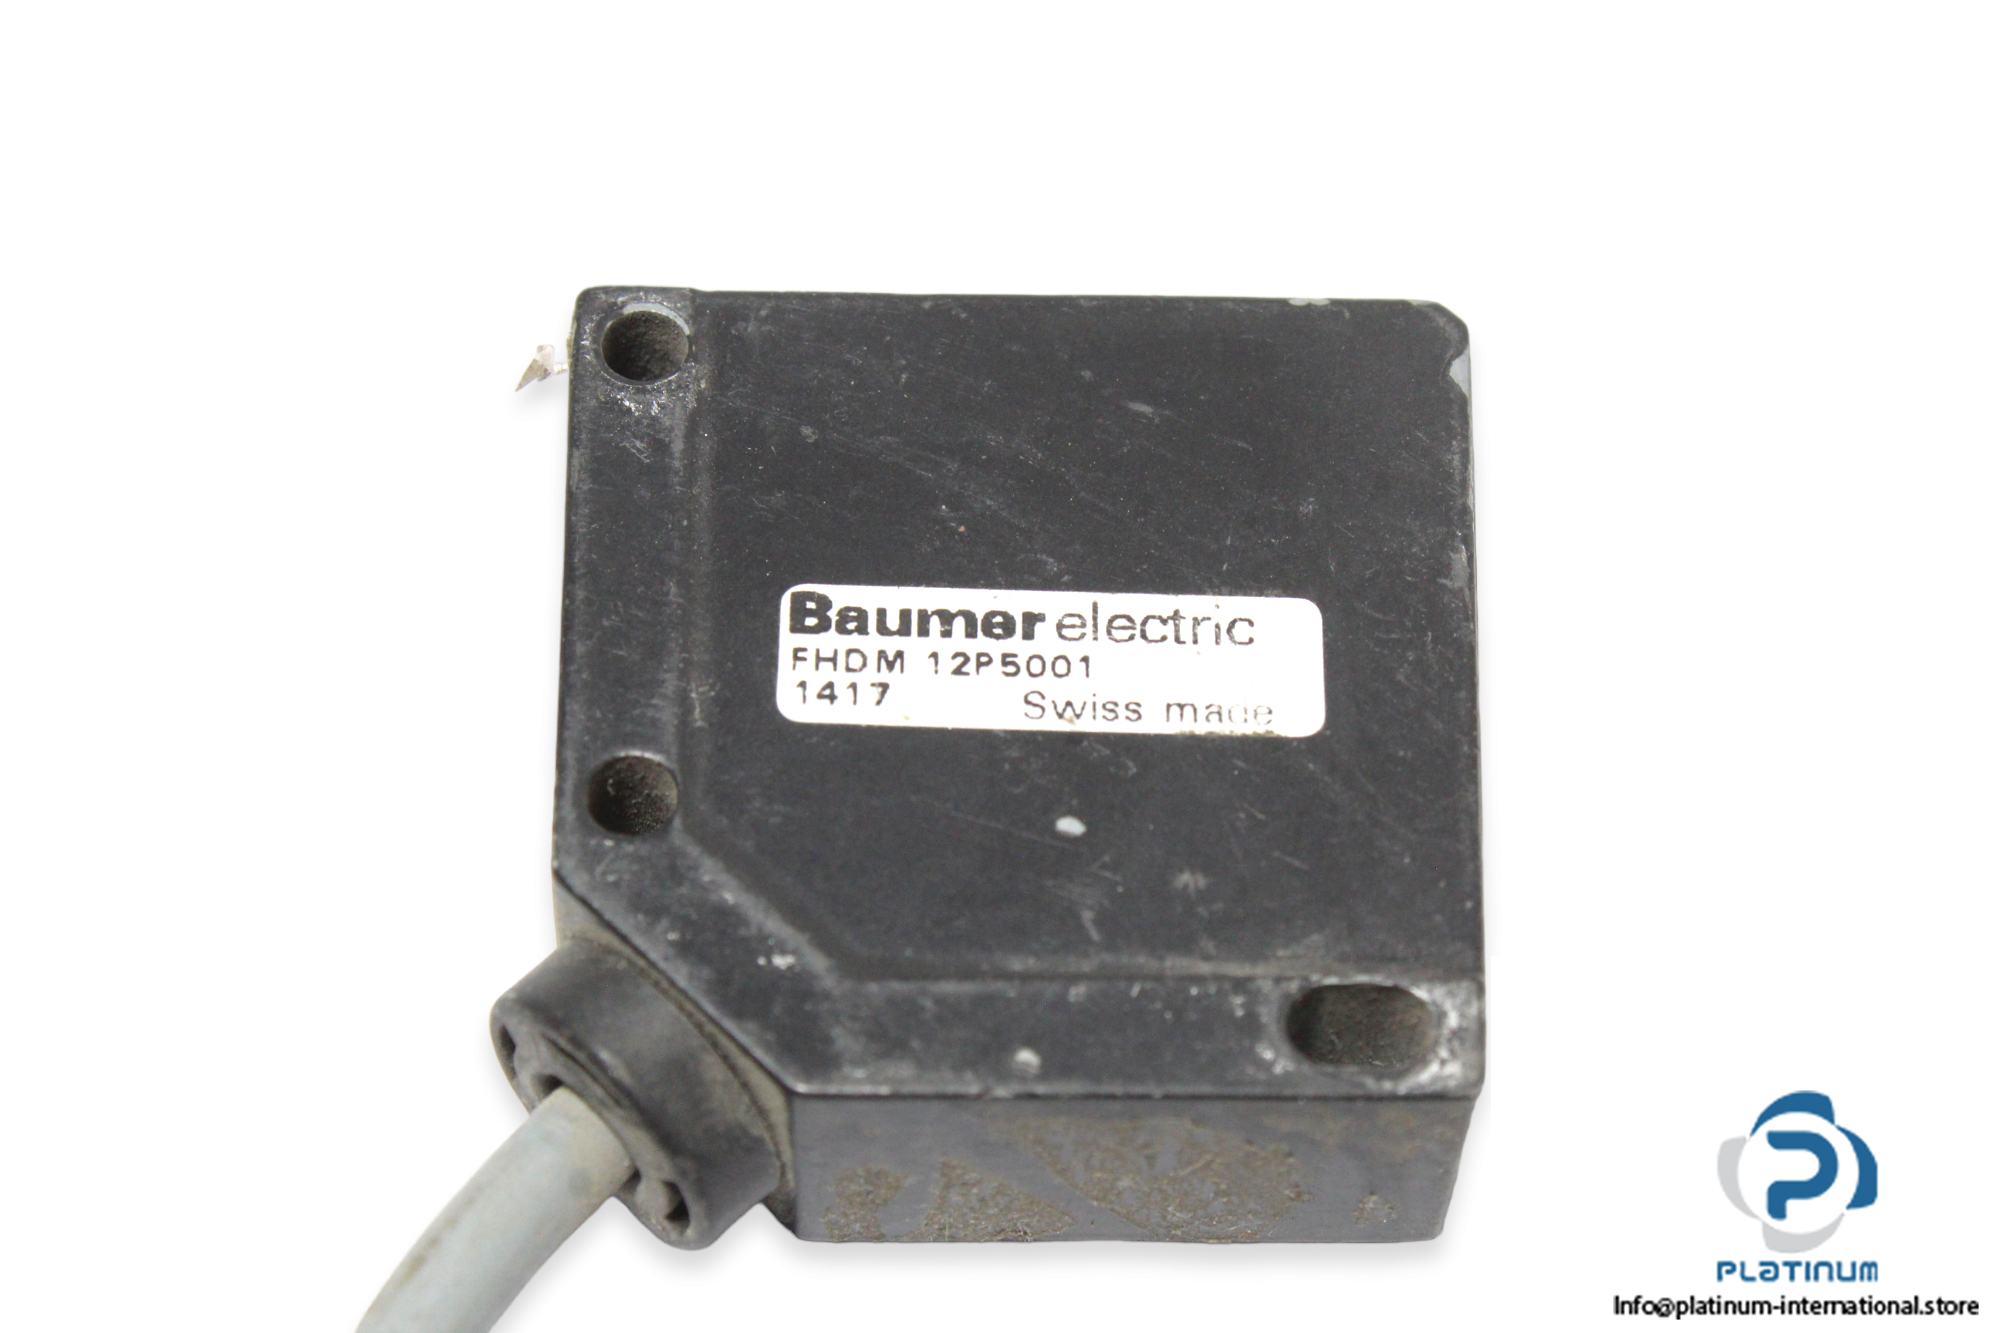 baumer-fhdm-12p5001-diffuse-sensor-2